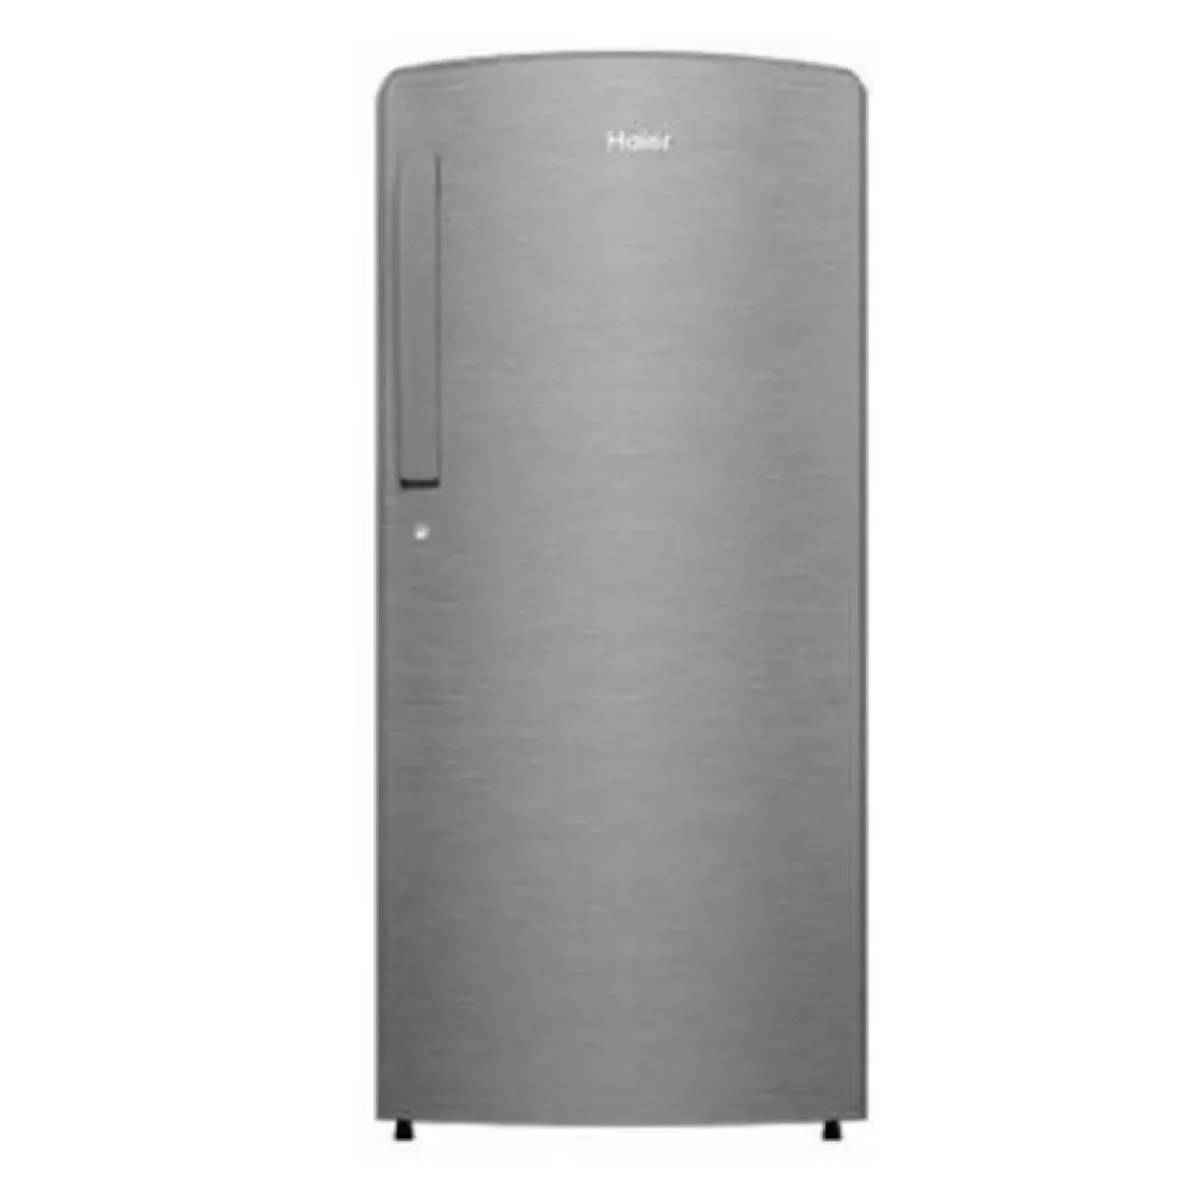 Haier 192 L 2 Star Single Door Refrigerator (HRD-1922CBS-E)